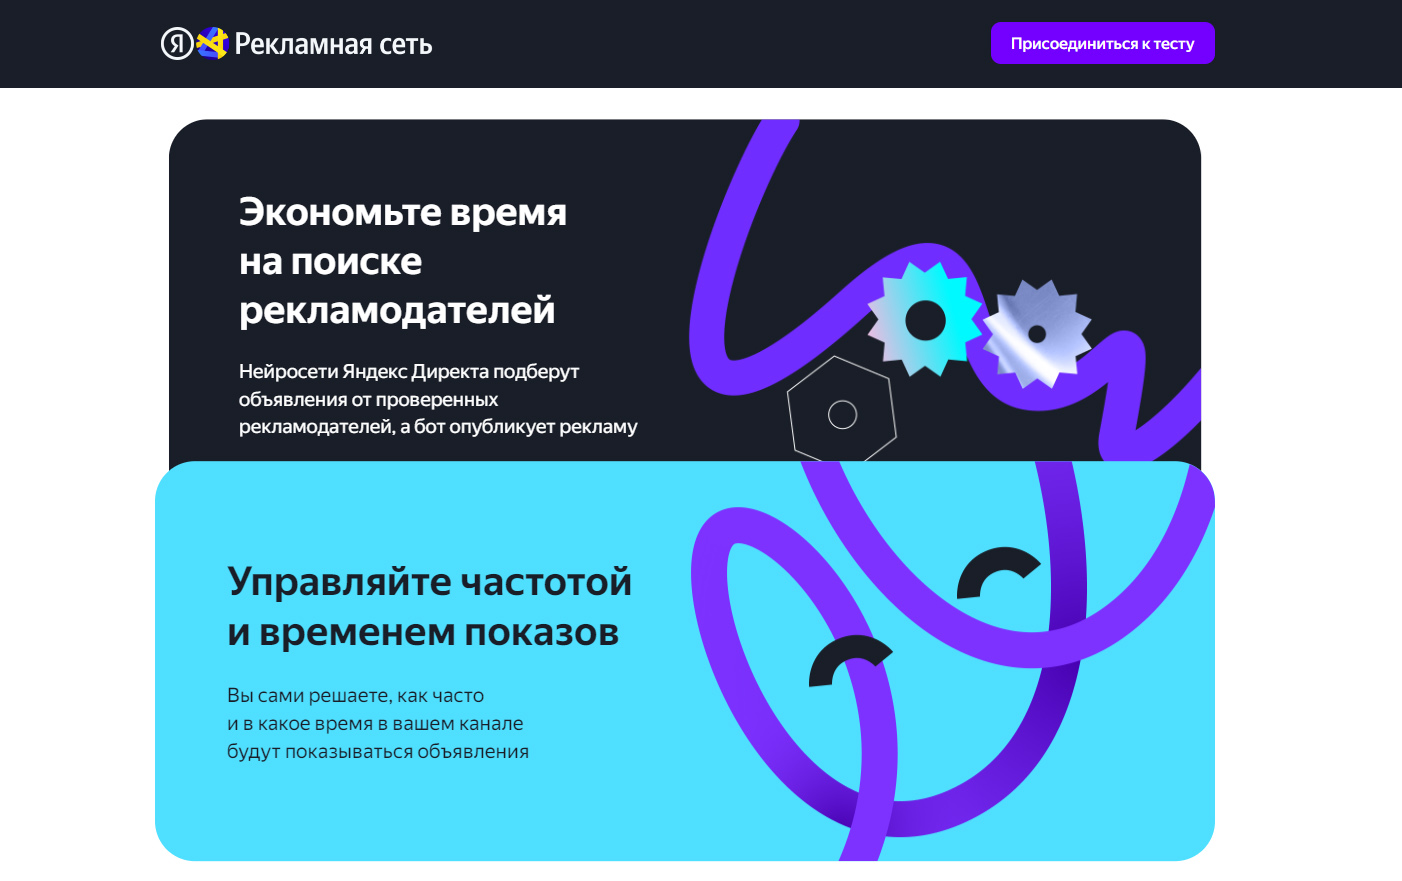 Пришла монетизация откуда не ждали — Яндекс запускает монетизацию телеграм-каналов